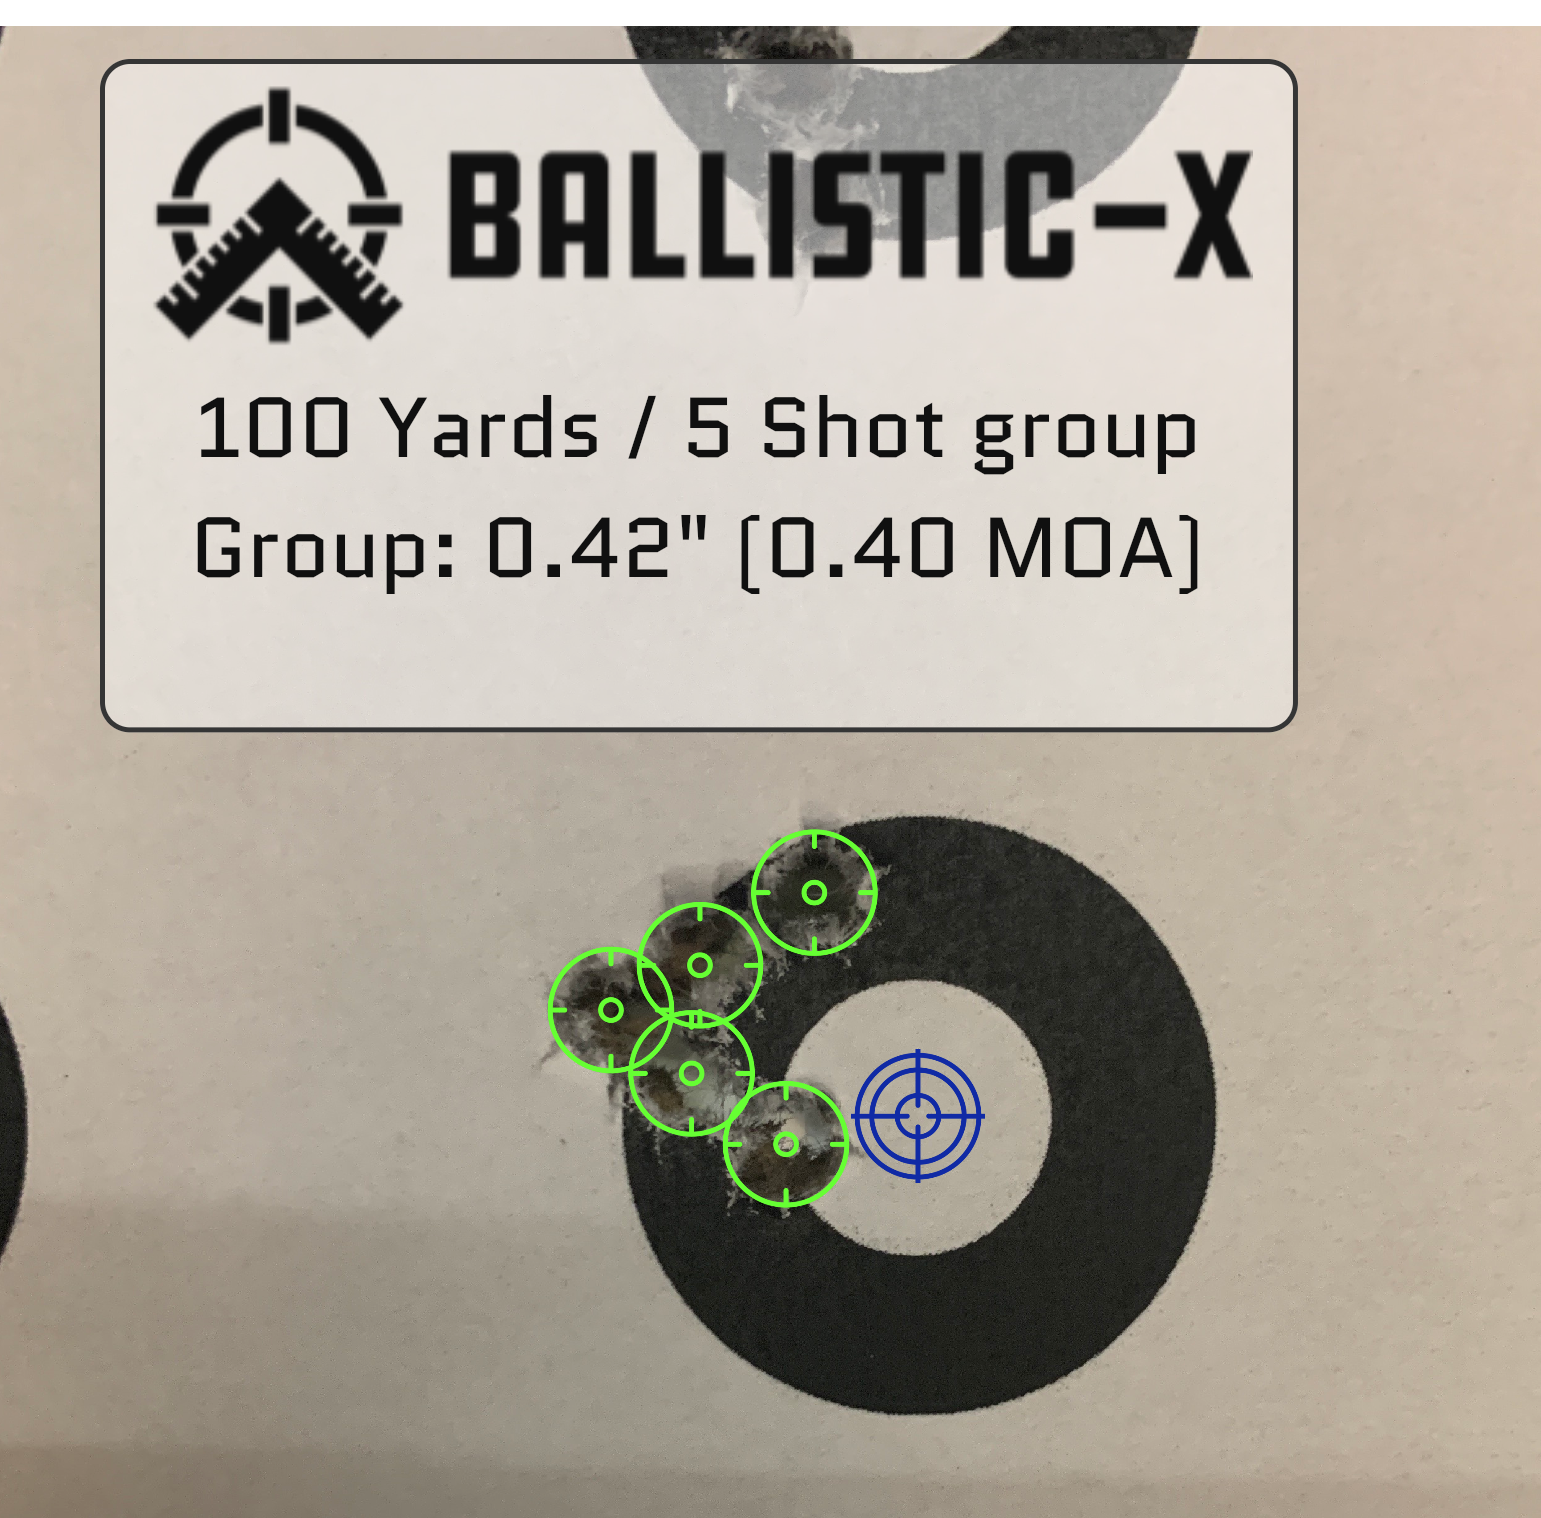 Ballistic-X-Export-2020-05-29 11:38:15.149566.png